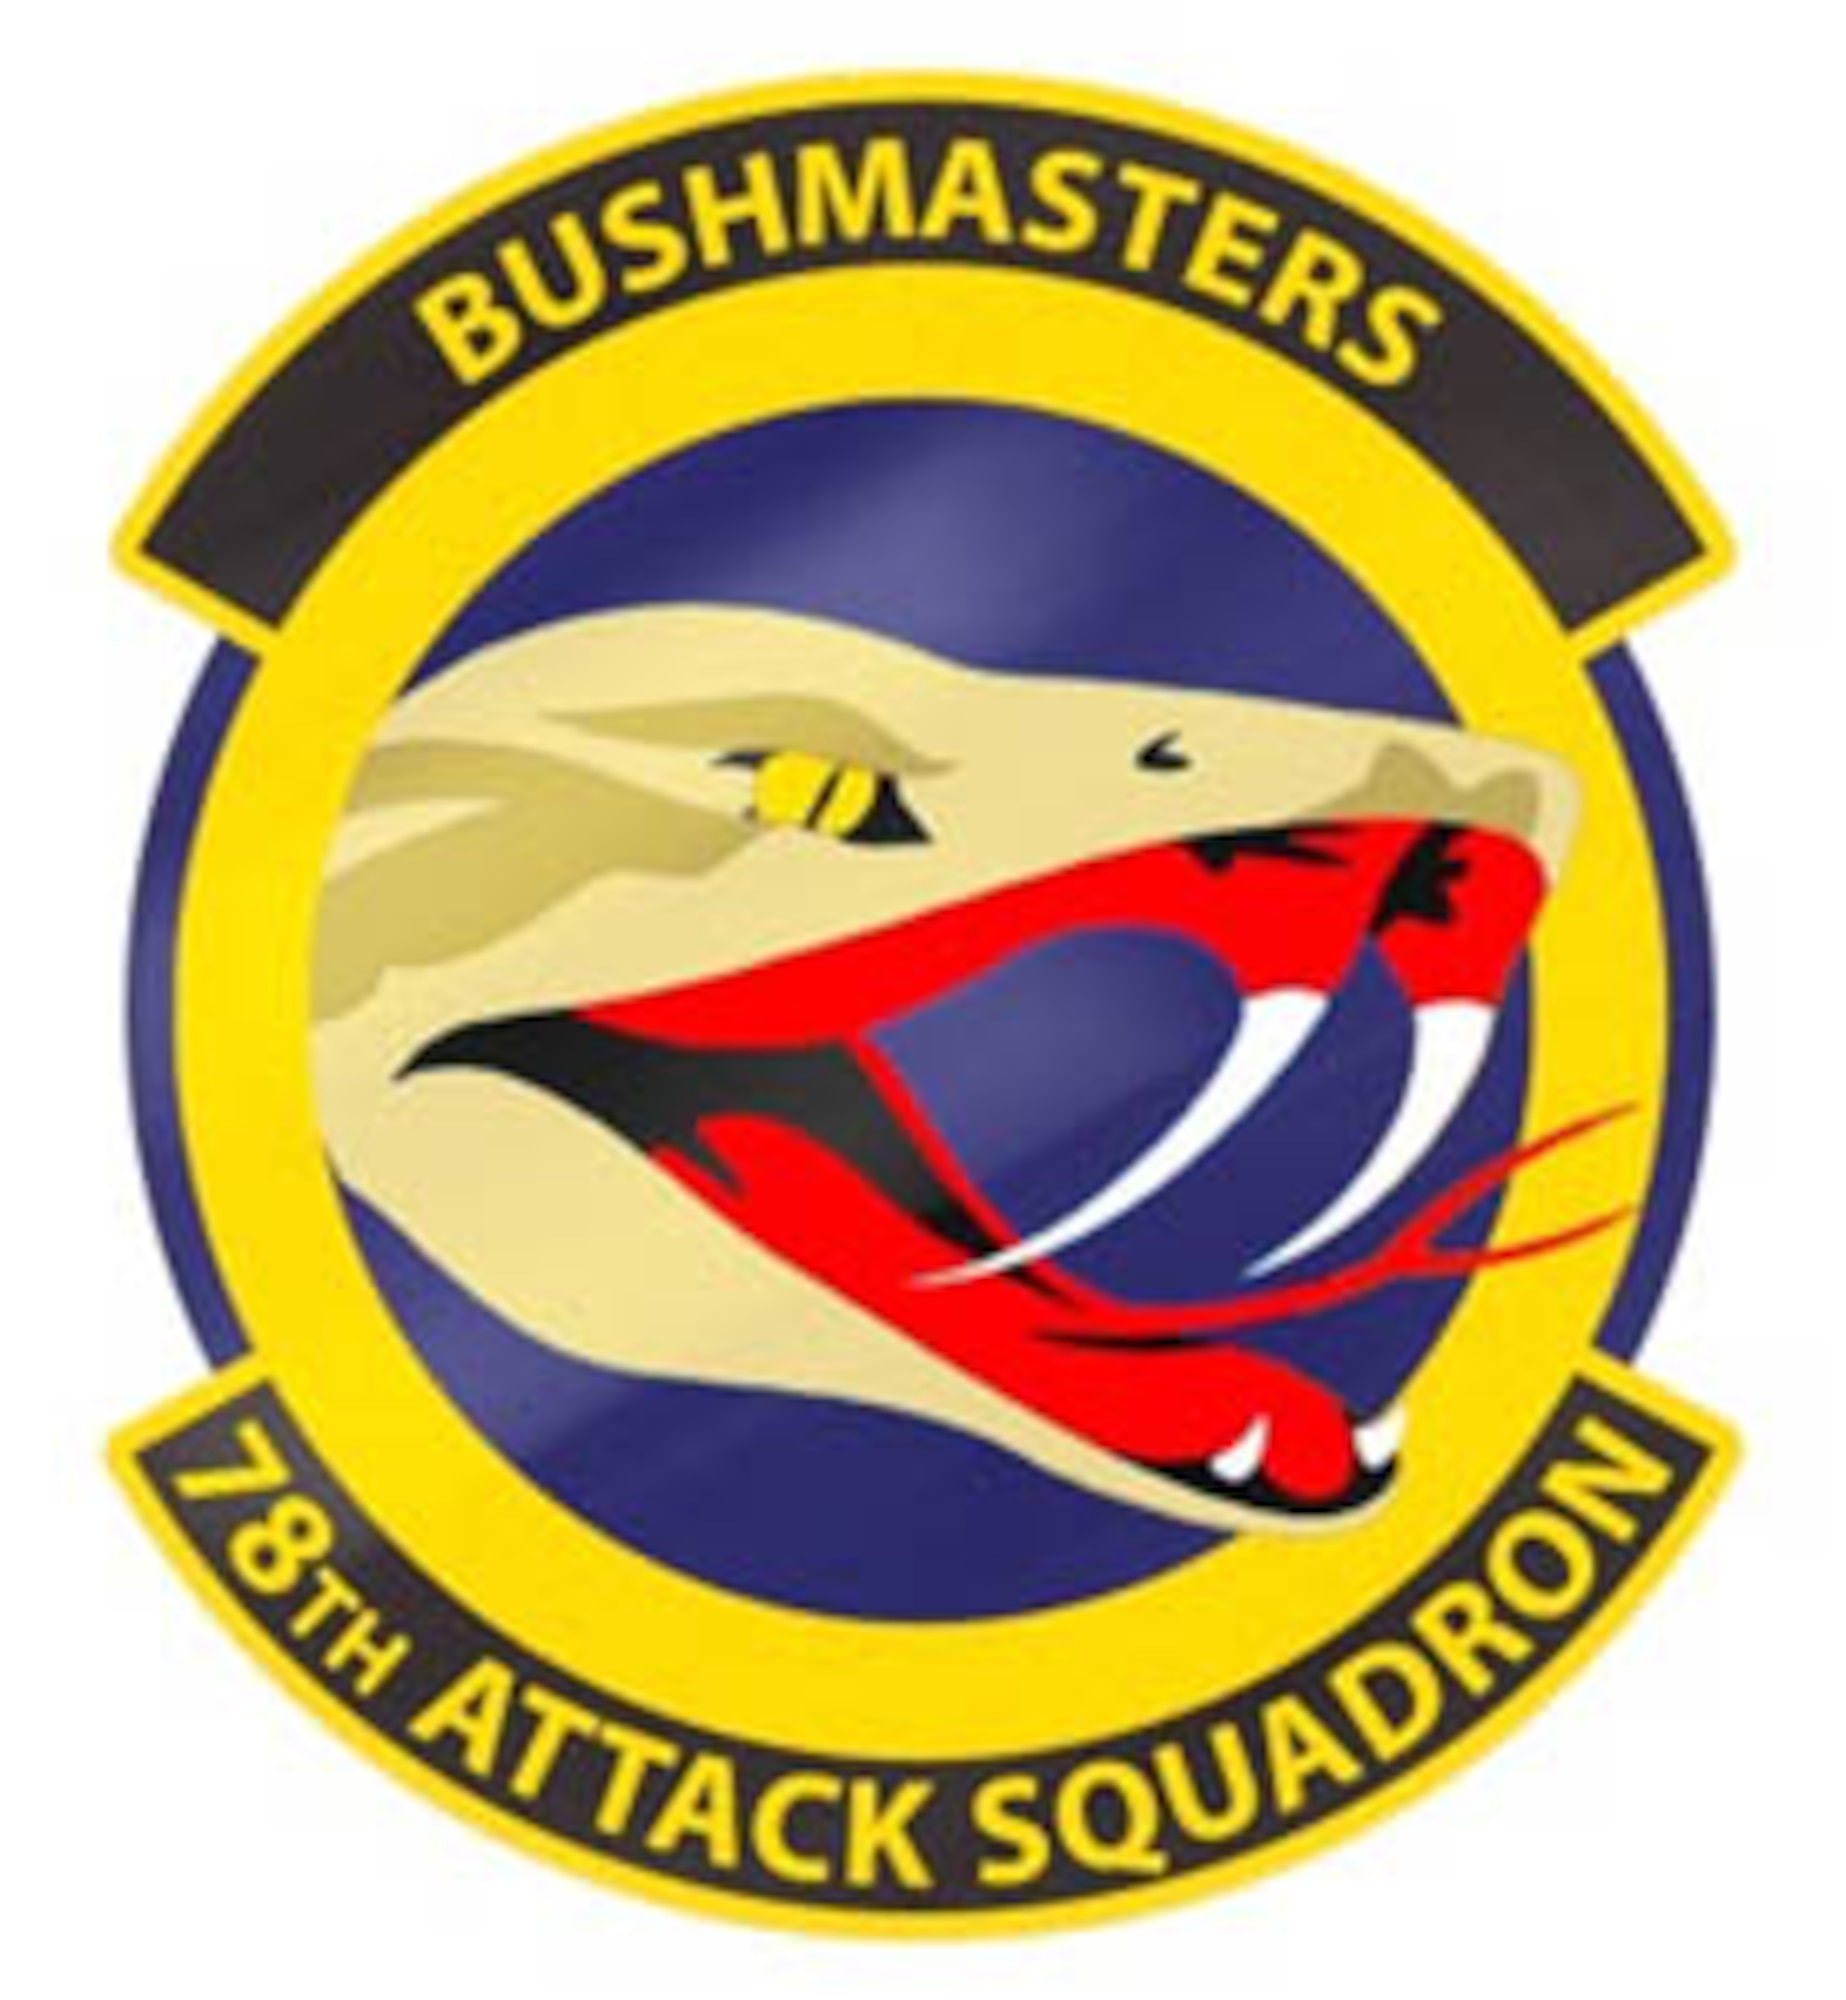 78th Attack Squadron patch